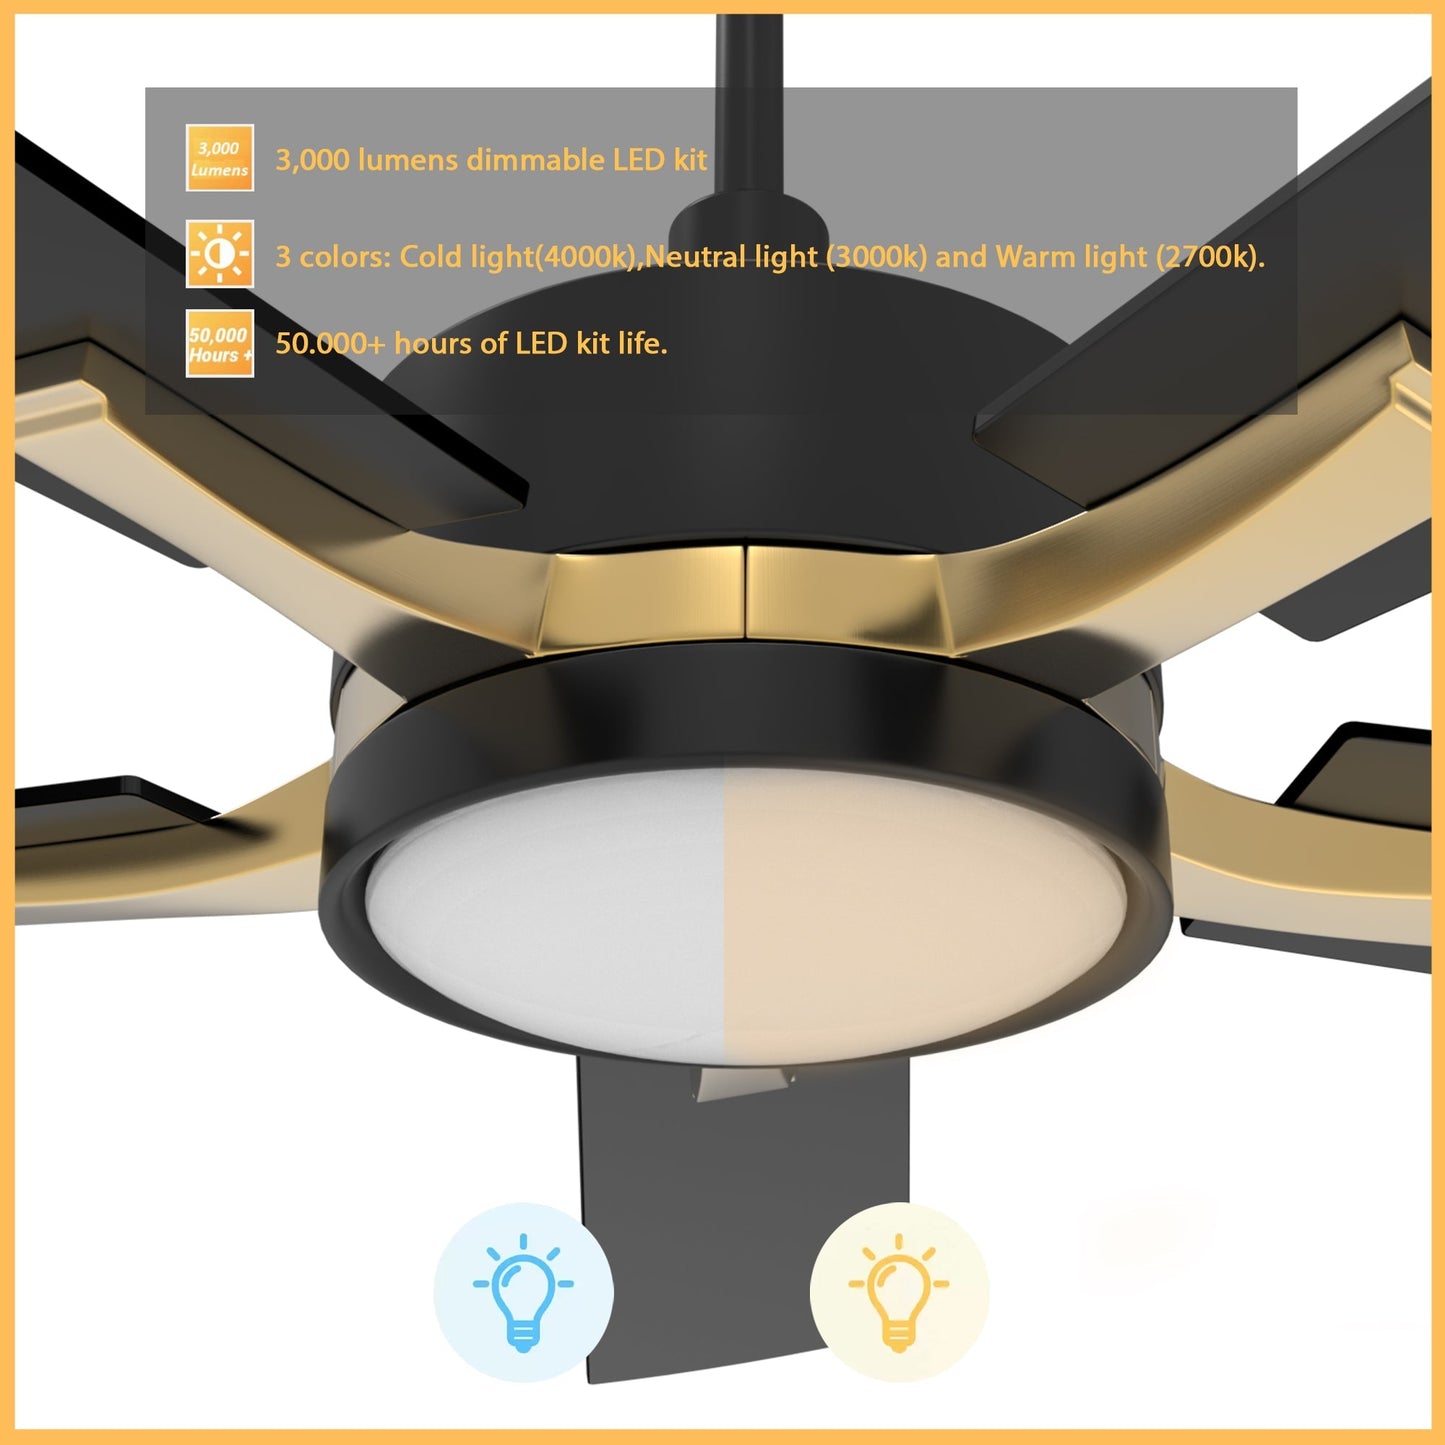 Appleton 52 Inch 5-Blade Best Smart Ceiling Fan With Led Light Kit & Remote Control- Black/Black (Gold Detail)